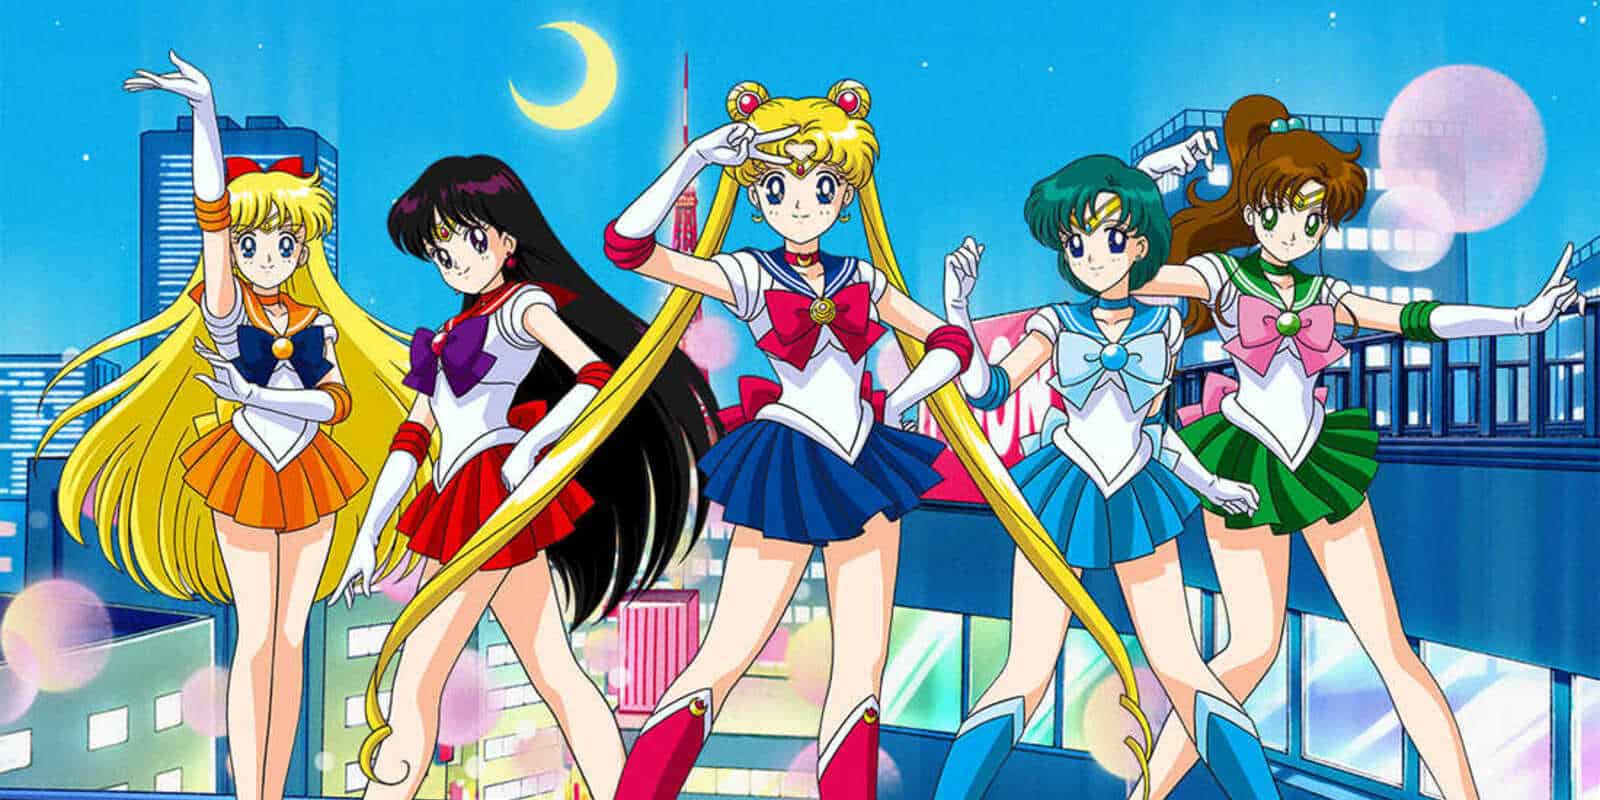 Usagi Tsukino and other Sailor Senshi